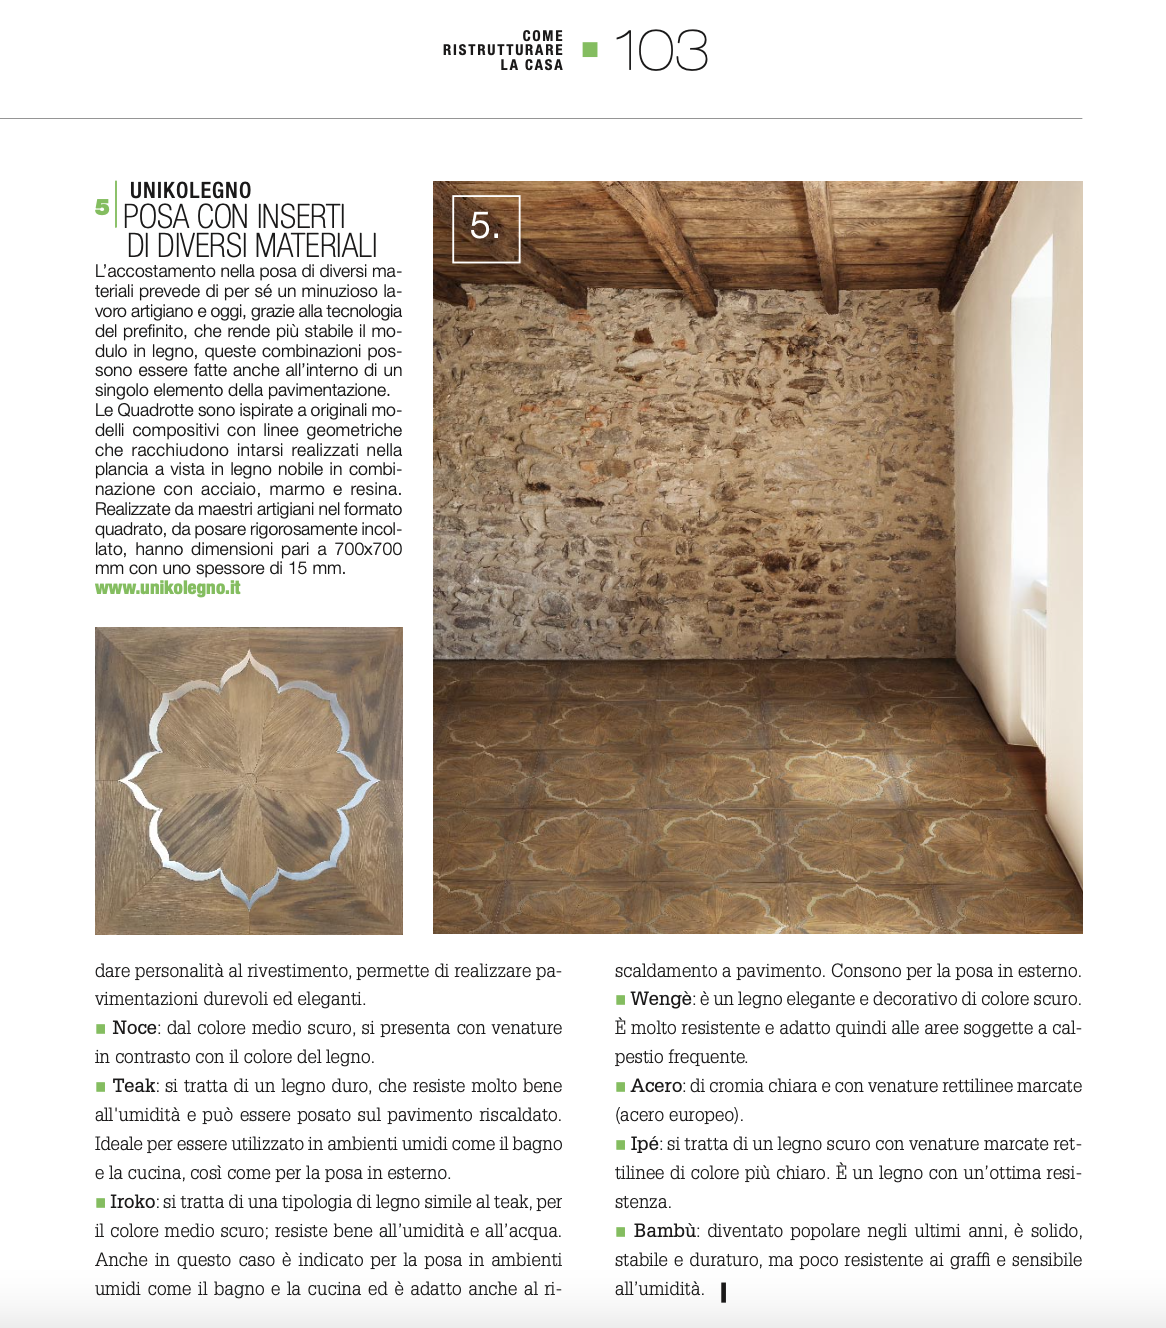 "Come ristrutturare la casa" magazine talk about us